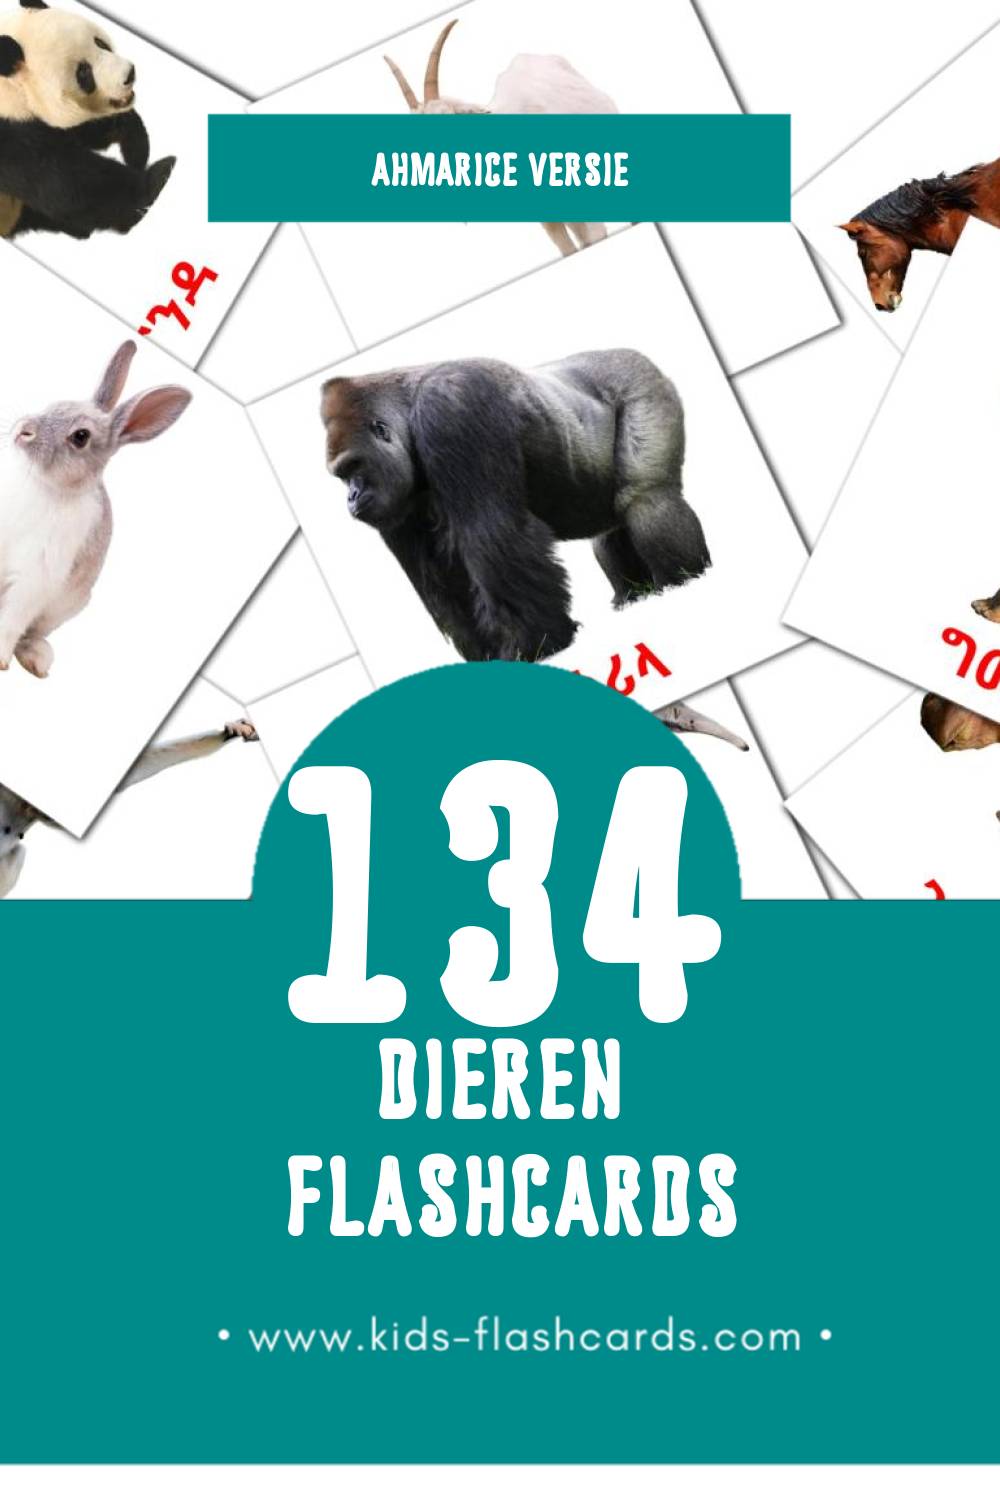 Visuele እንስሳት Flashcards voor Kleuters (134 kaarten in het Ahmaric)